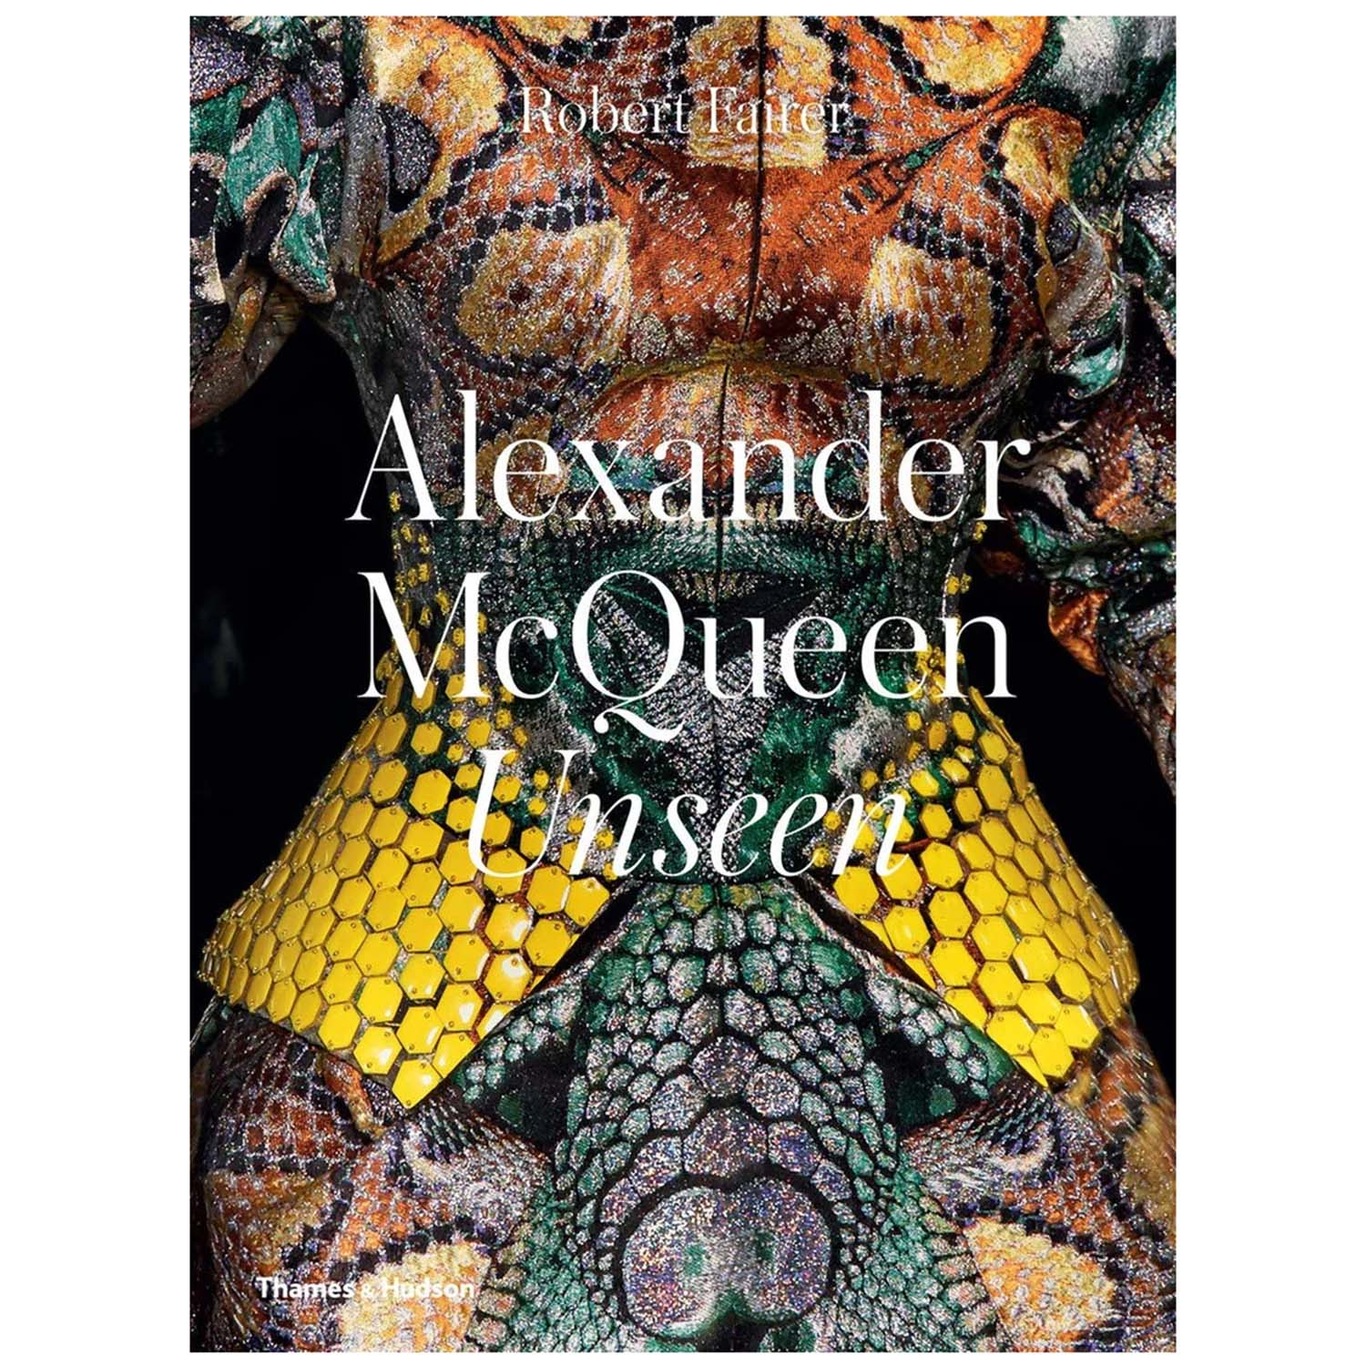 Alexander Mcqueen: Unseen Bog